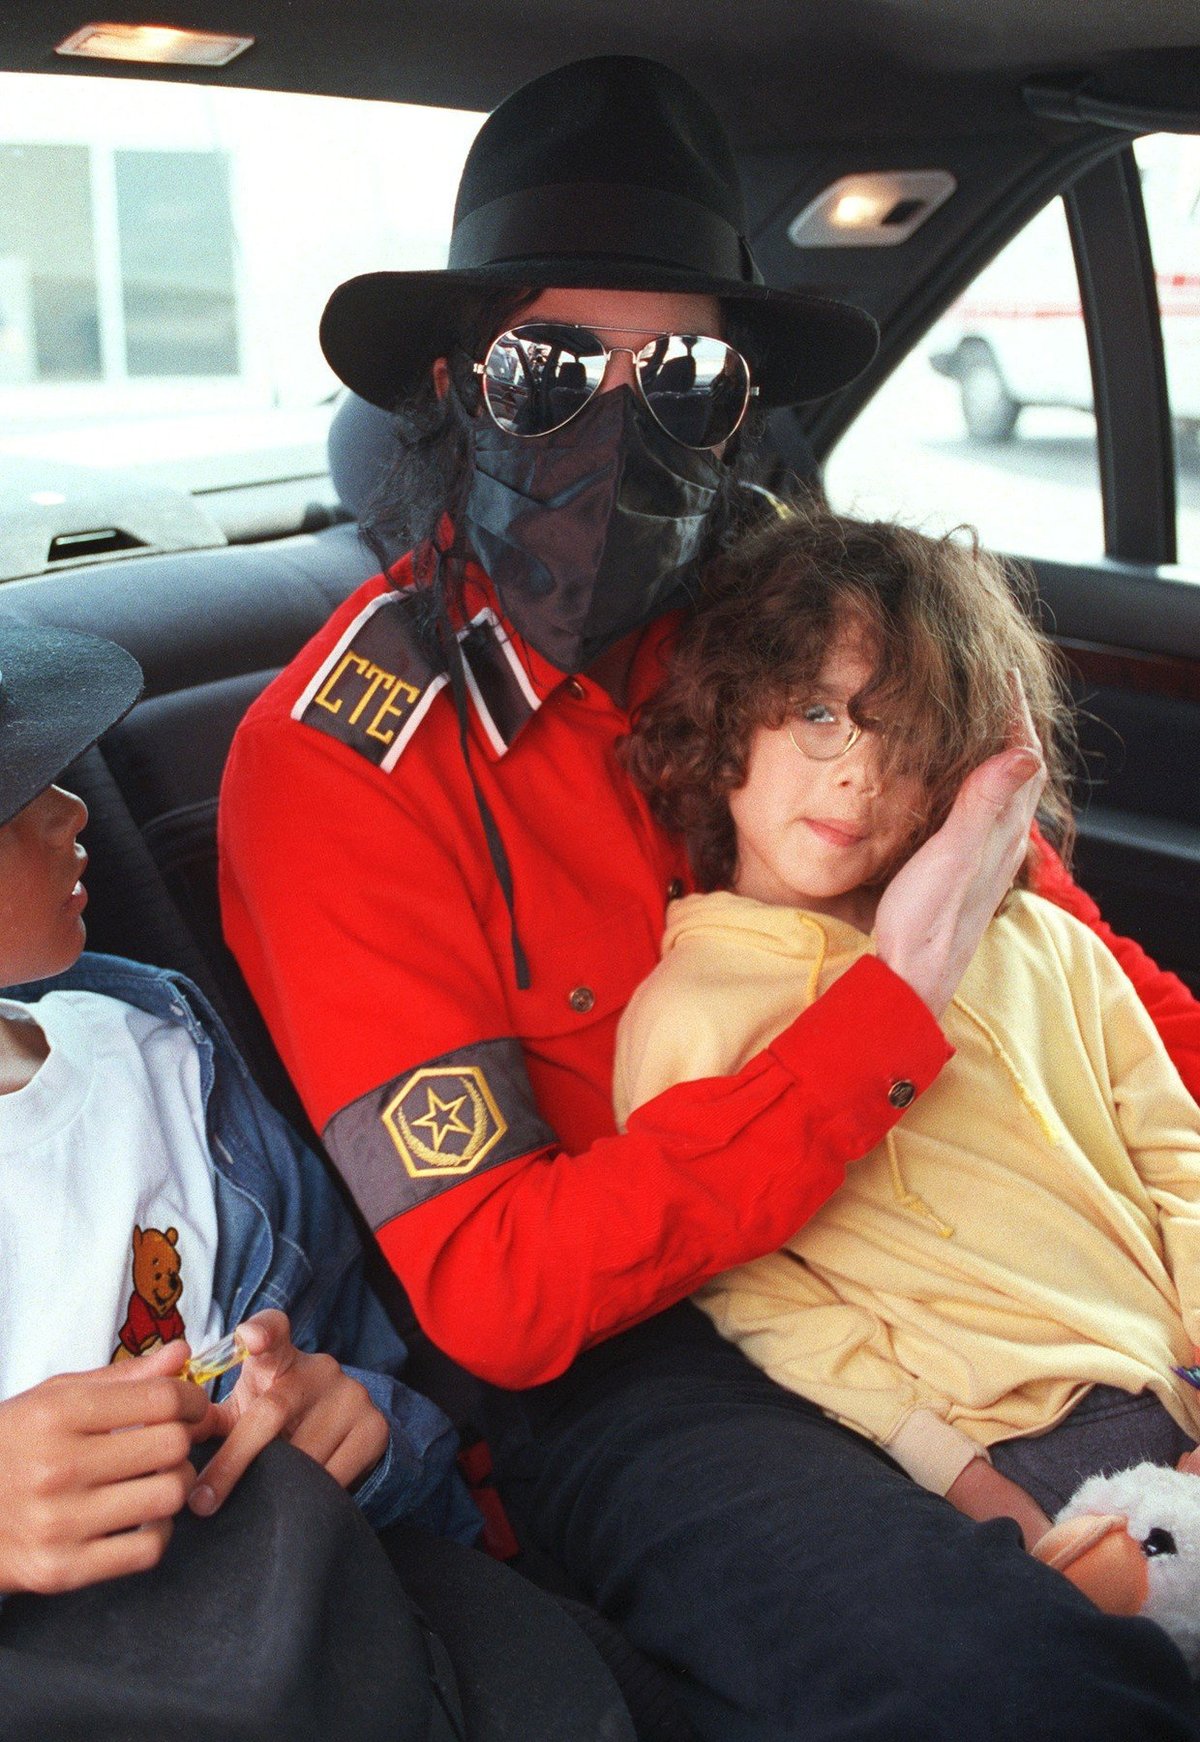 Rouška na obličeji, chlapec na klíně, typický obrázek poloviny 90. let.